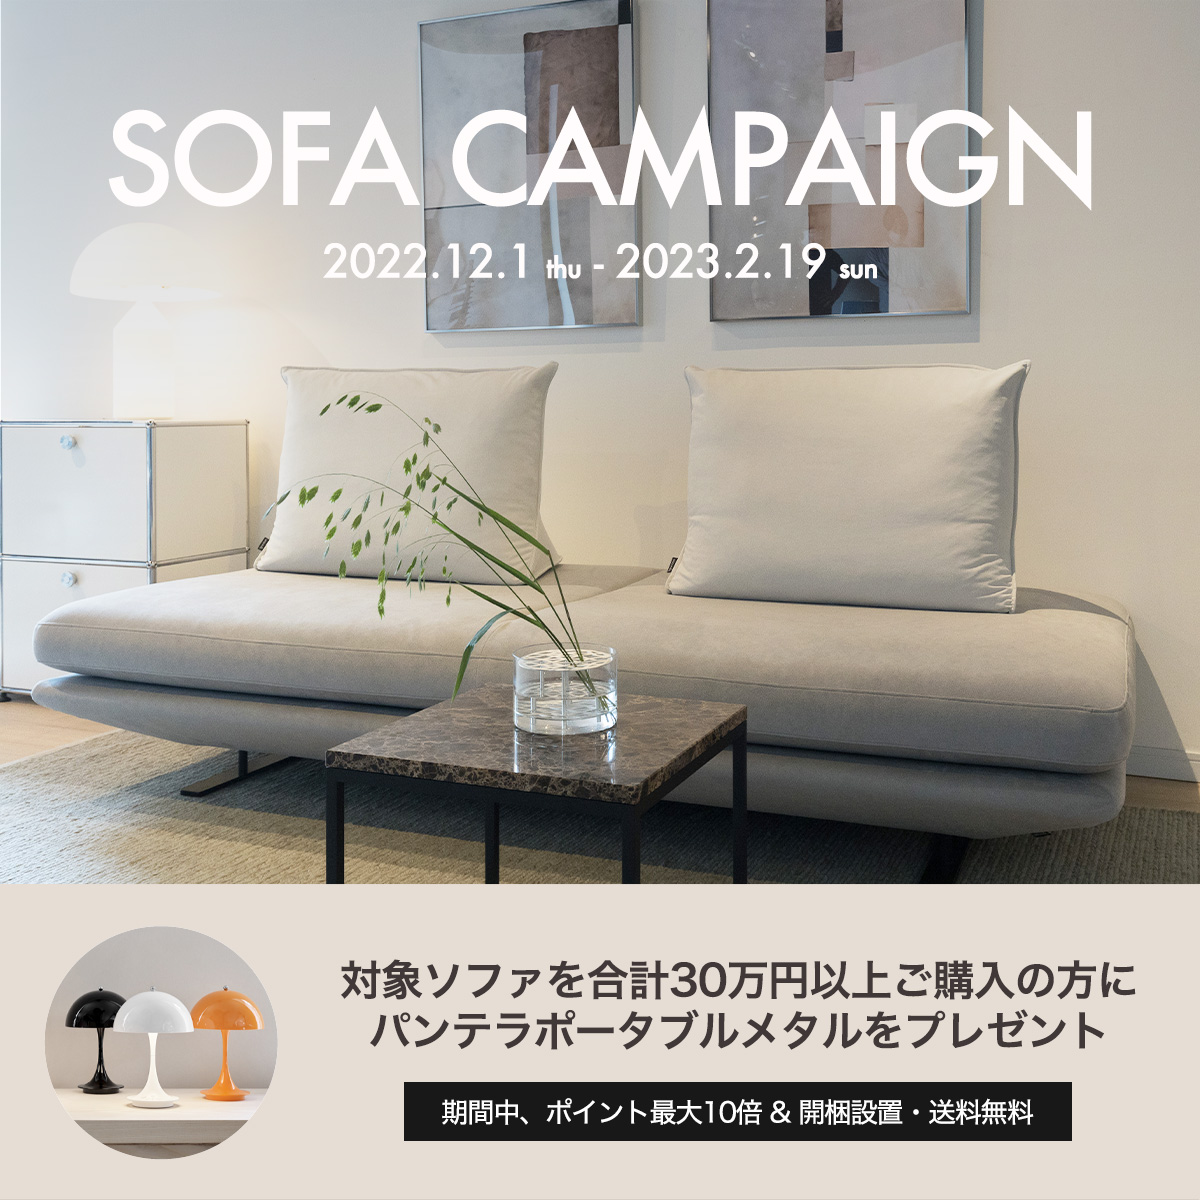 Sofa Campaign ソファキャンペーン